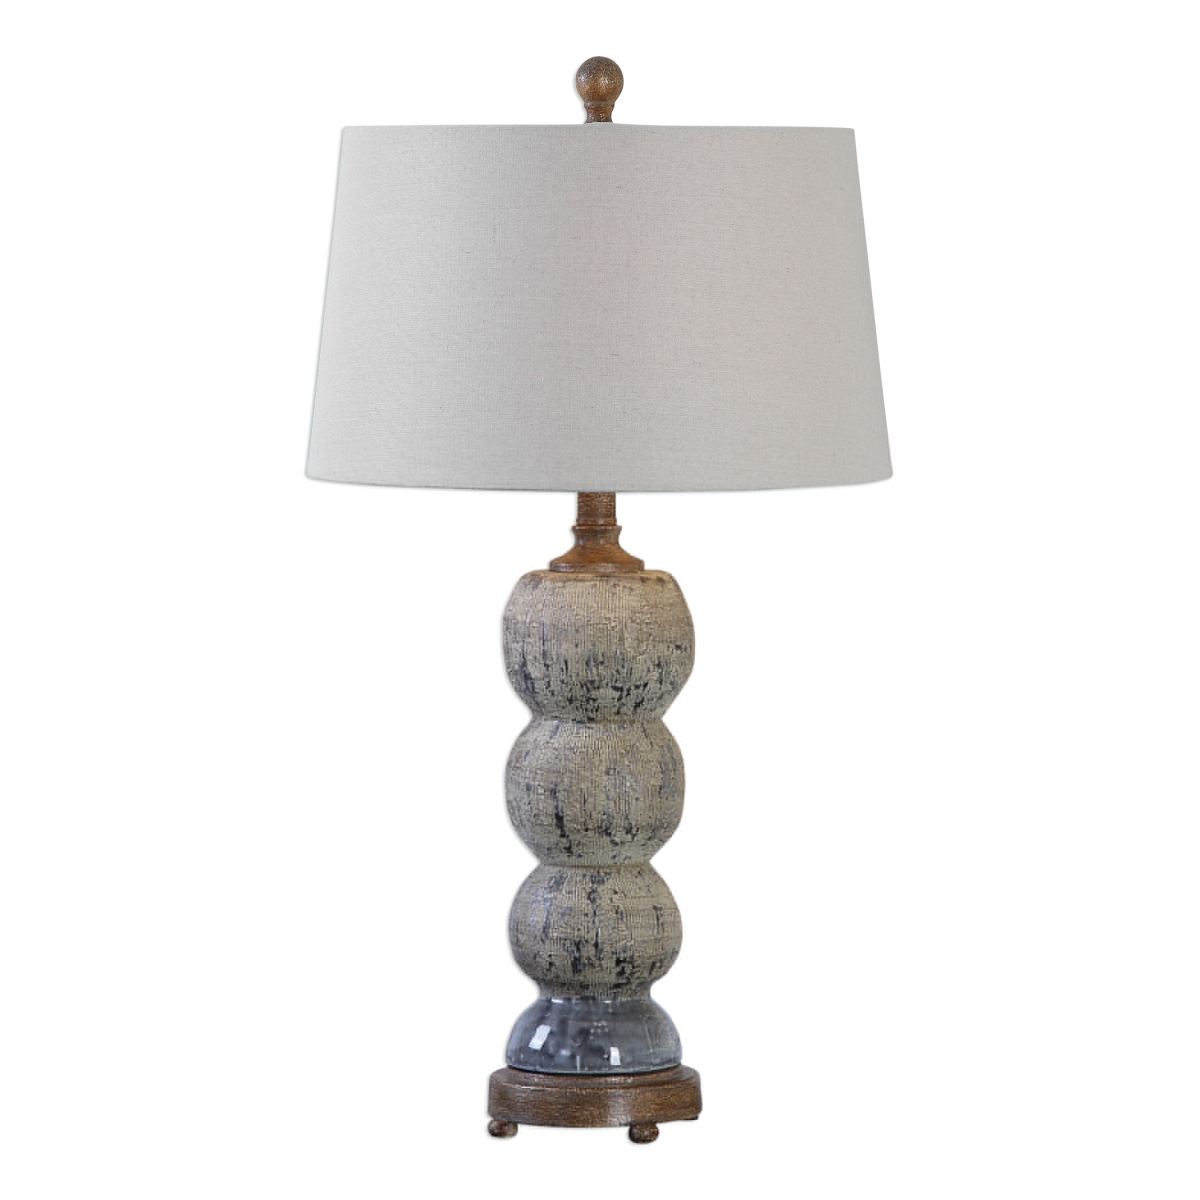 27262 Amelia Textured Ceramic Lamp